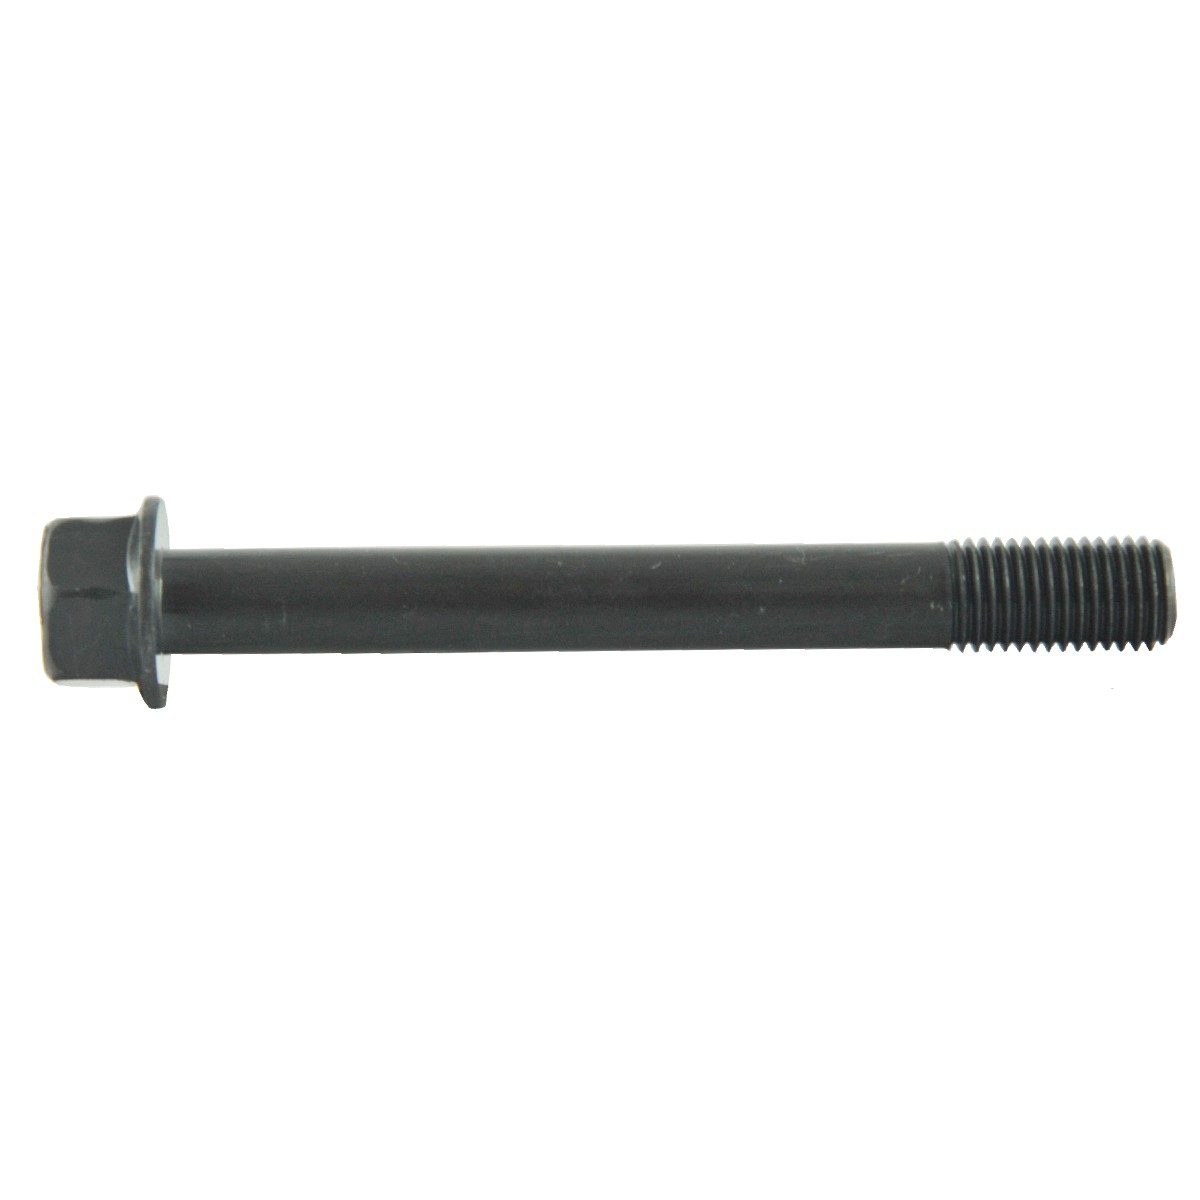 Screw M10 x 1.25 x 86 mm / LS XJ25 / 31A0121100 / 40190353/40224938